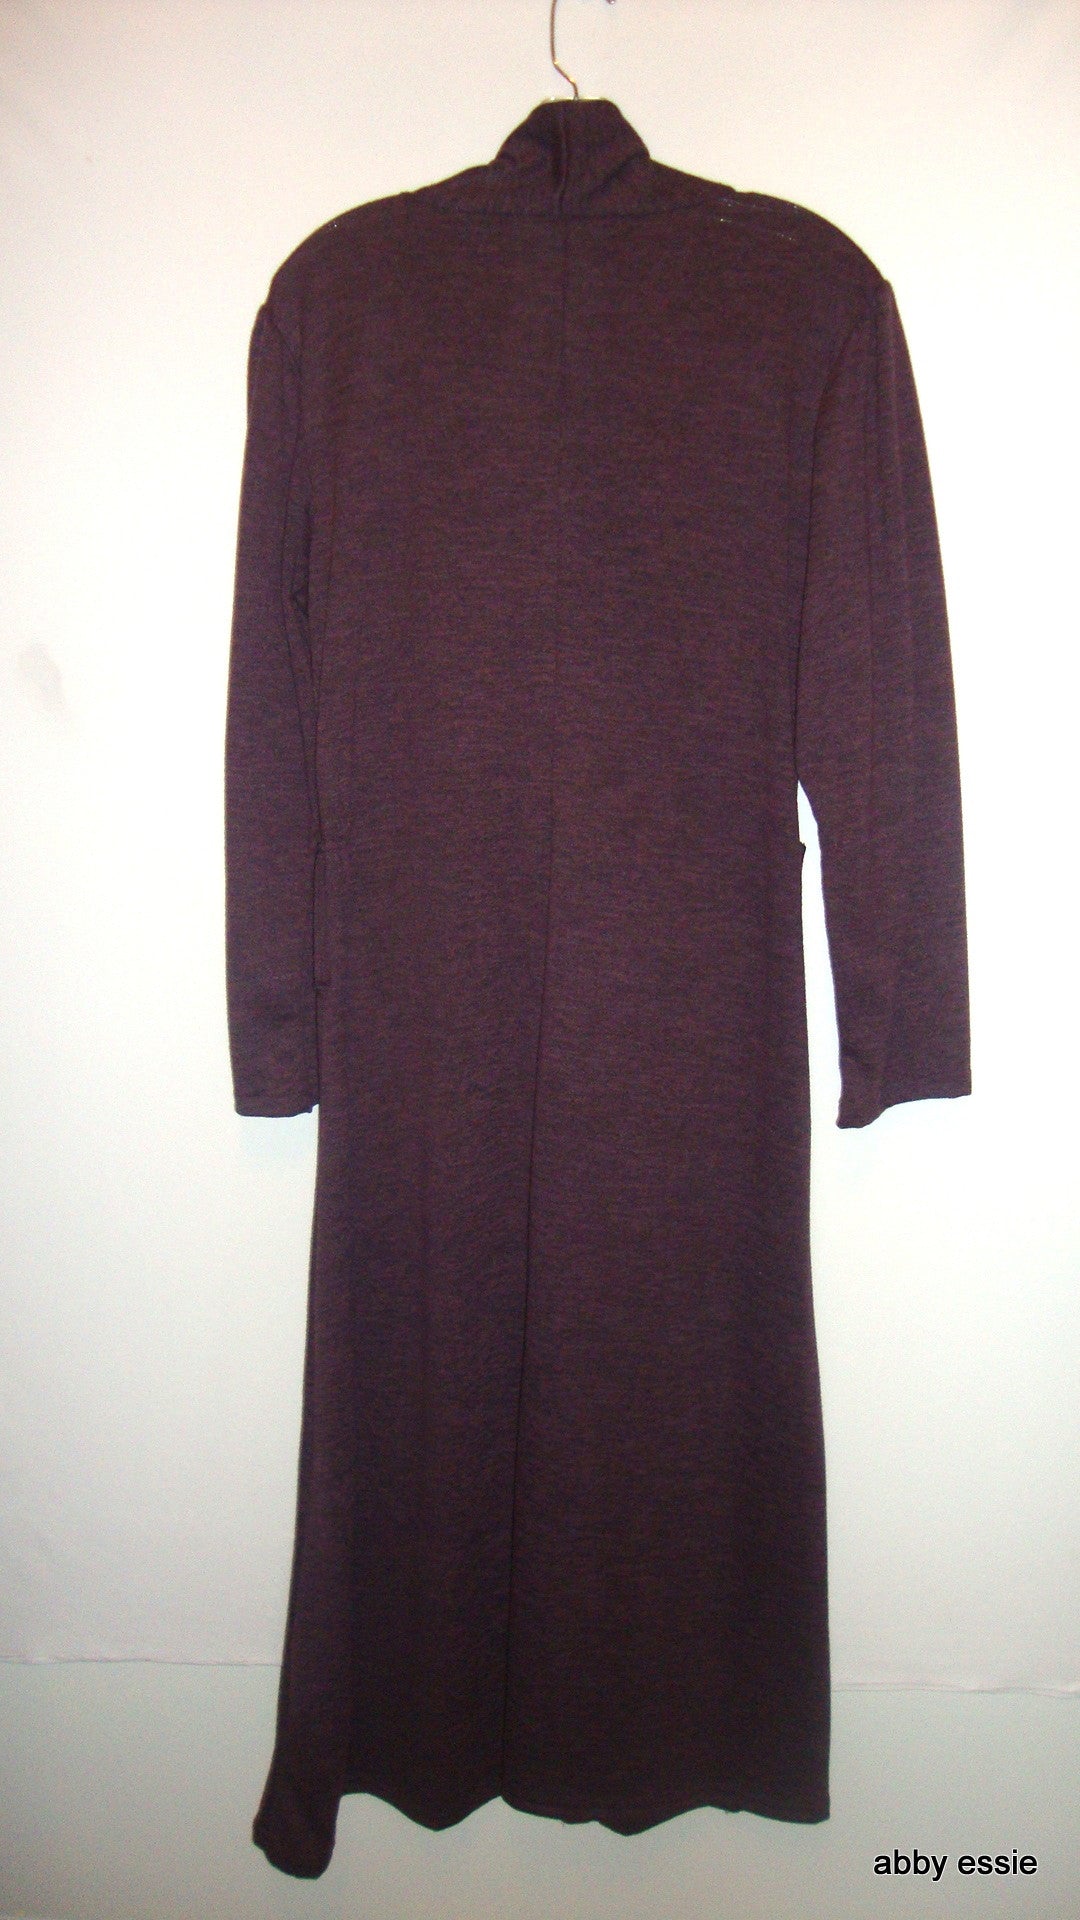 Cozy Purple Eggplant Knit Sweater Long Turtleneck Dress Sz Plus 14 Large